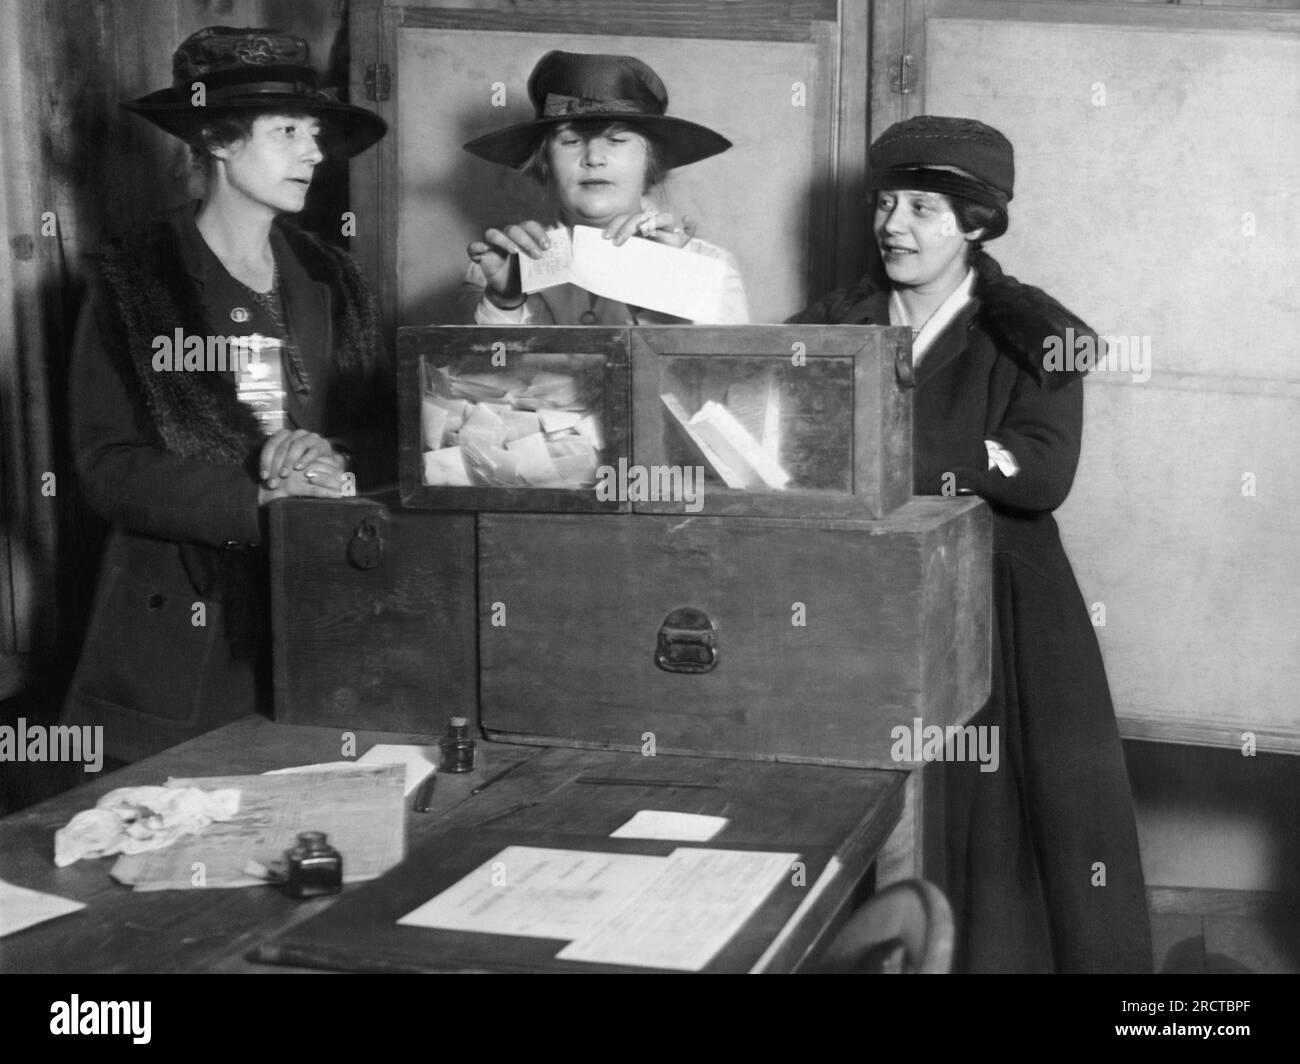 New York, New York: ca. 1917 drei Wahlrechtsnachfolger geben Stimmen in New York City ab. Die Originalunterschrift lautete: "Beruhigen Sie sich. An der 56. Und Lexington Avenue zeigten die Wählerinnen keine Ignoranz oder Angst, sondern gaben ihre Stimmzettel auf eine sachliche Weise ab, die eine maßgeschneiderte Studie des Wahlrechts darstellt." Stockfoto